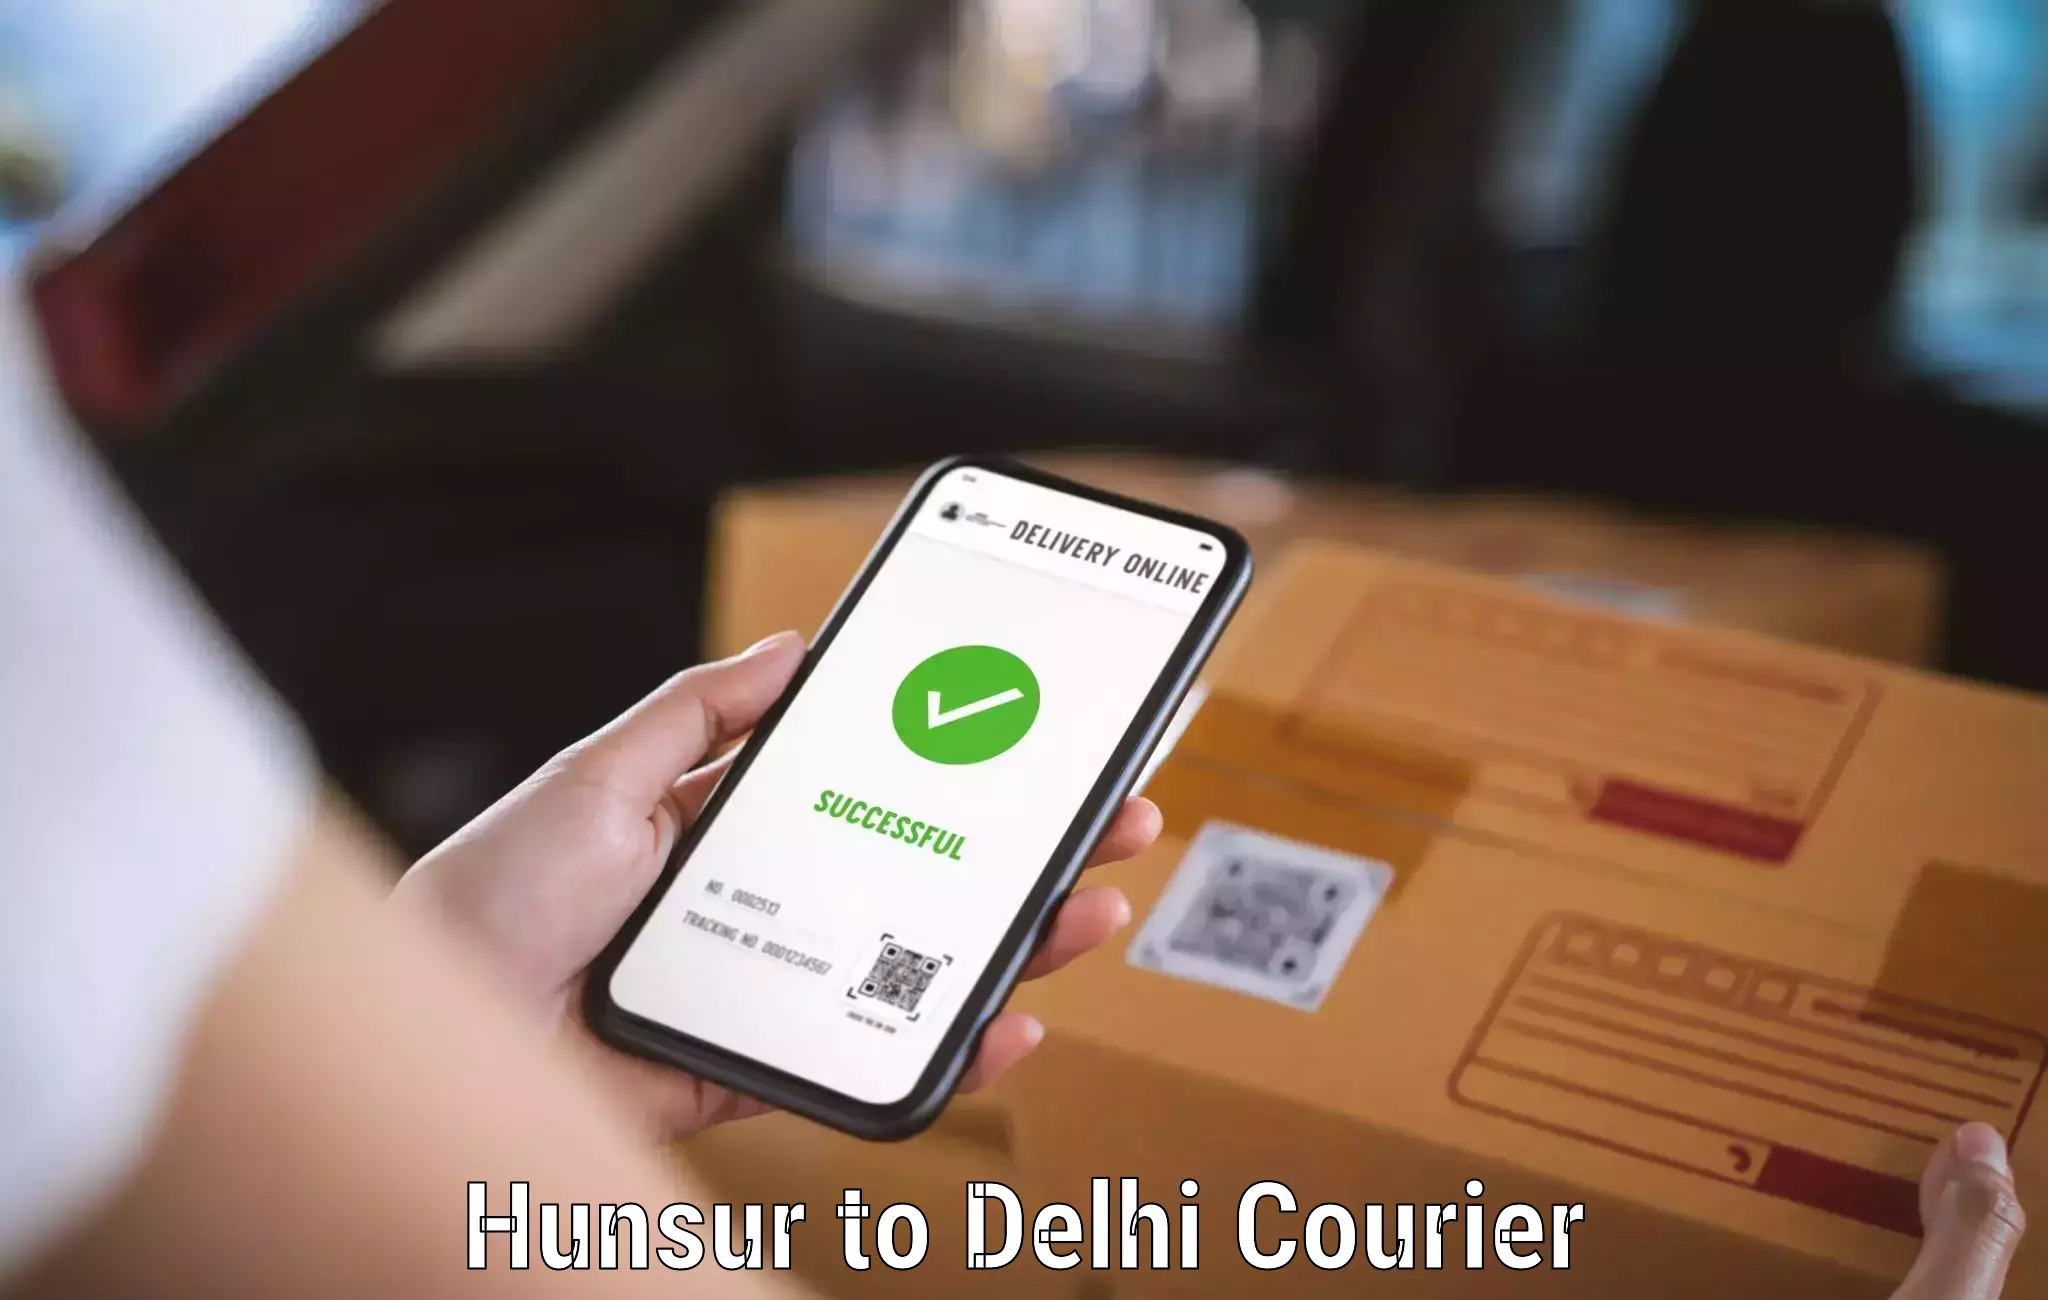 Courier service partnerships Hunsur to Ashok Vihar